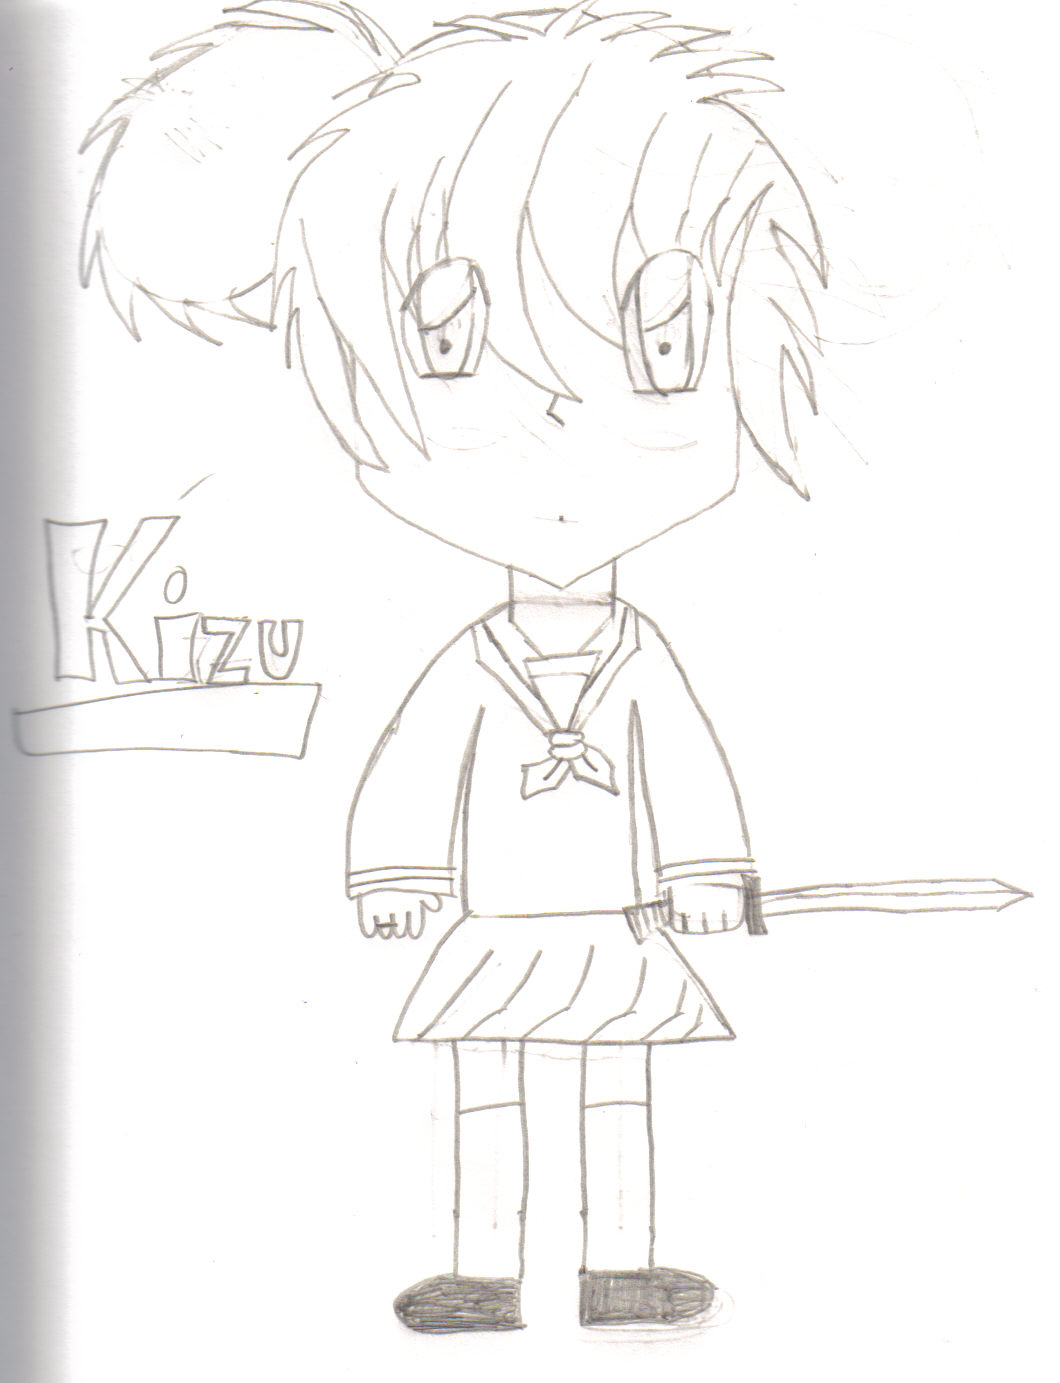 Kizu by shippo-fan